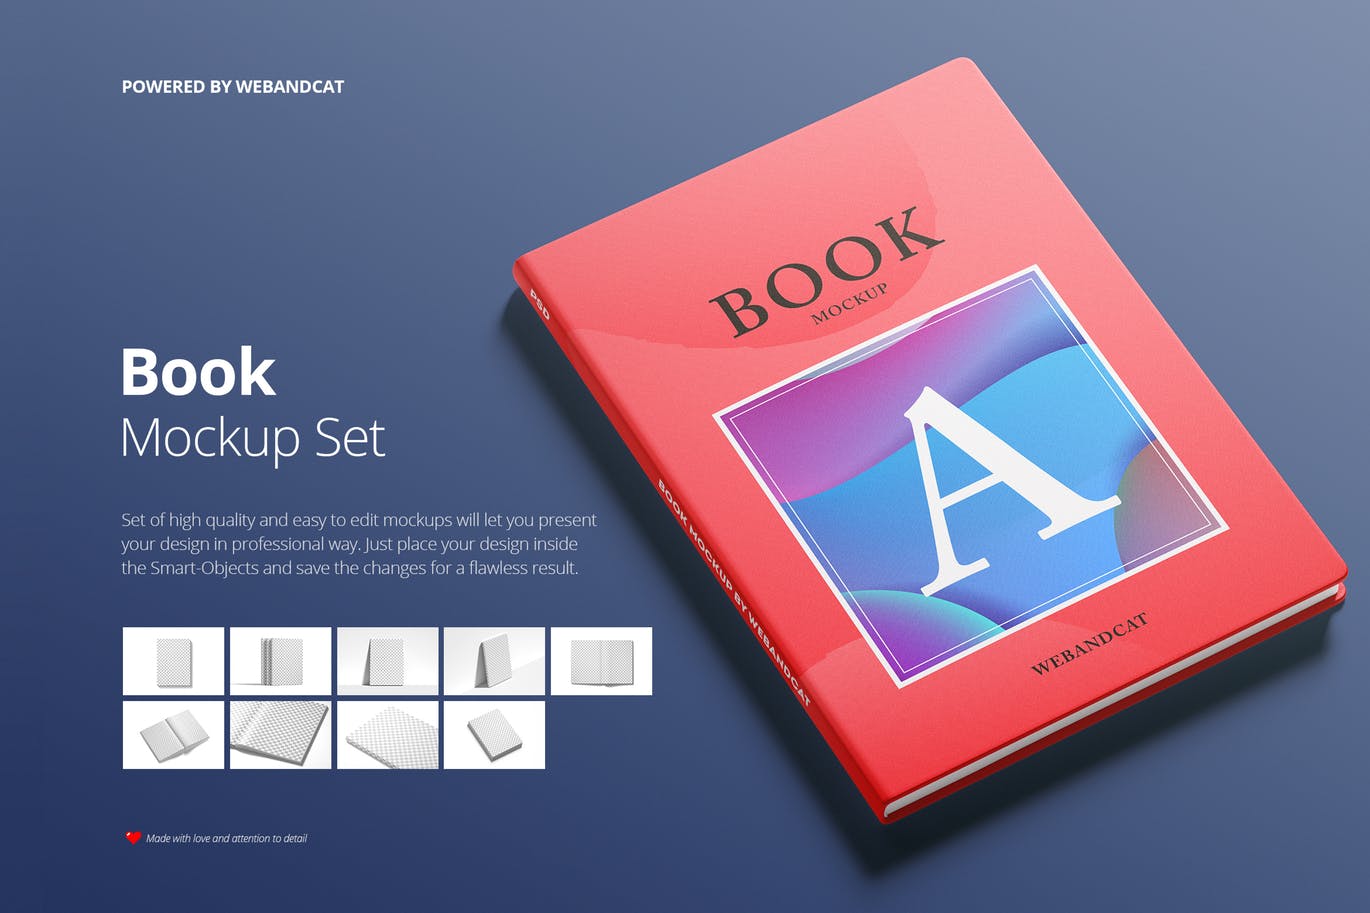 9套高质量且易于编辑记事本/书籍样机素材中国精选 Book Mockup Set插图